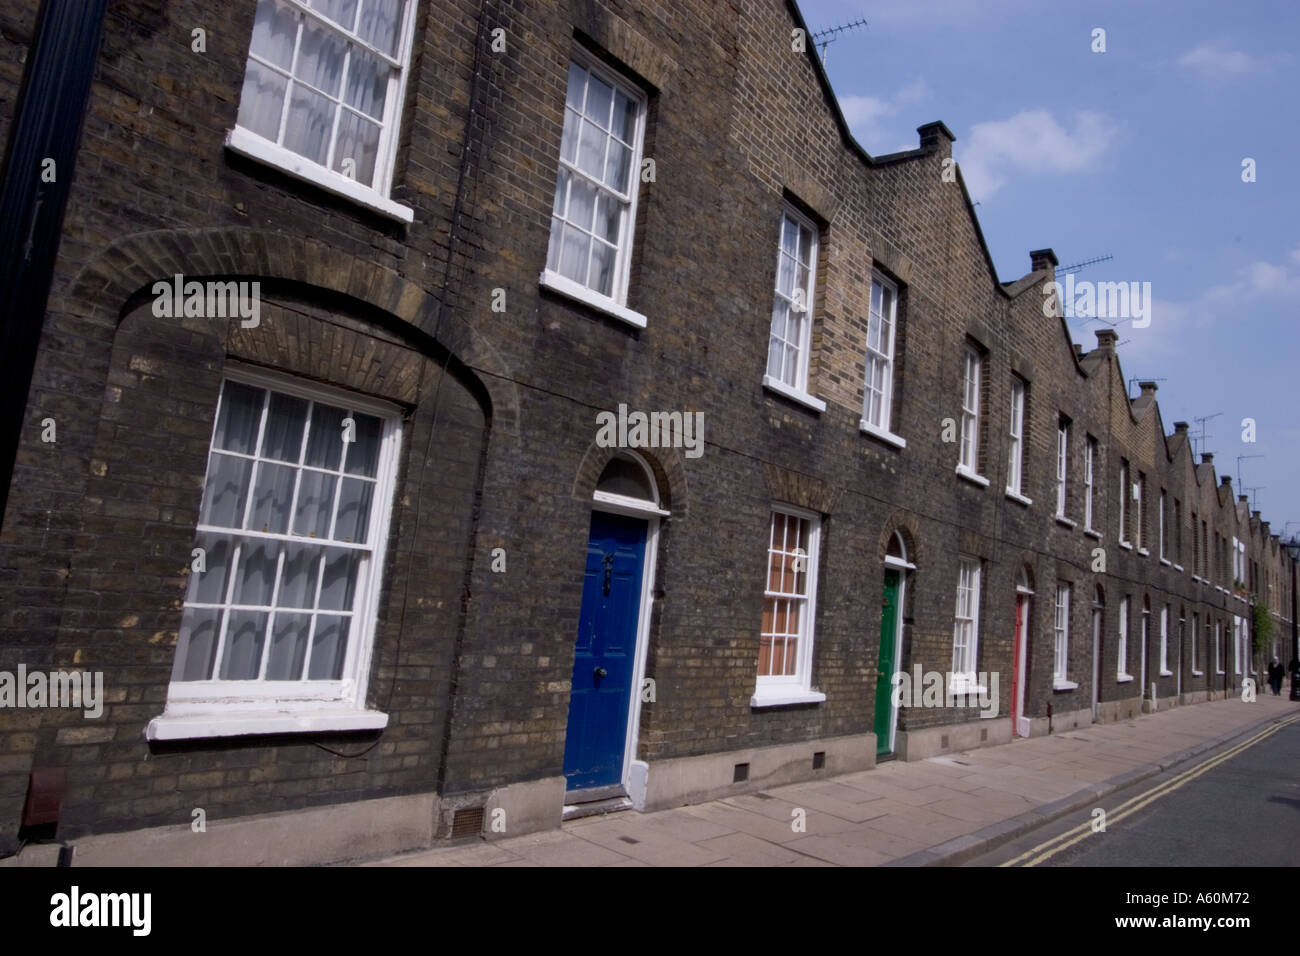 Roupell Street South London área de conservación con casas adosadas victorianas y lámpara de gas catalogado de grado 2 estándares Foto de stock